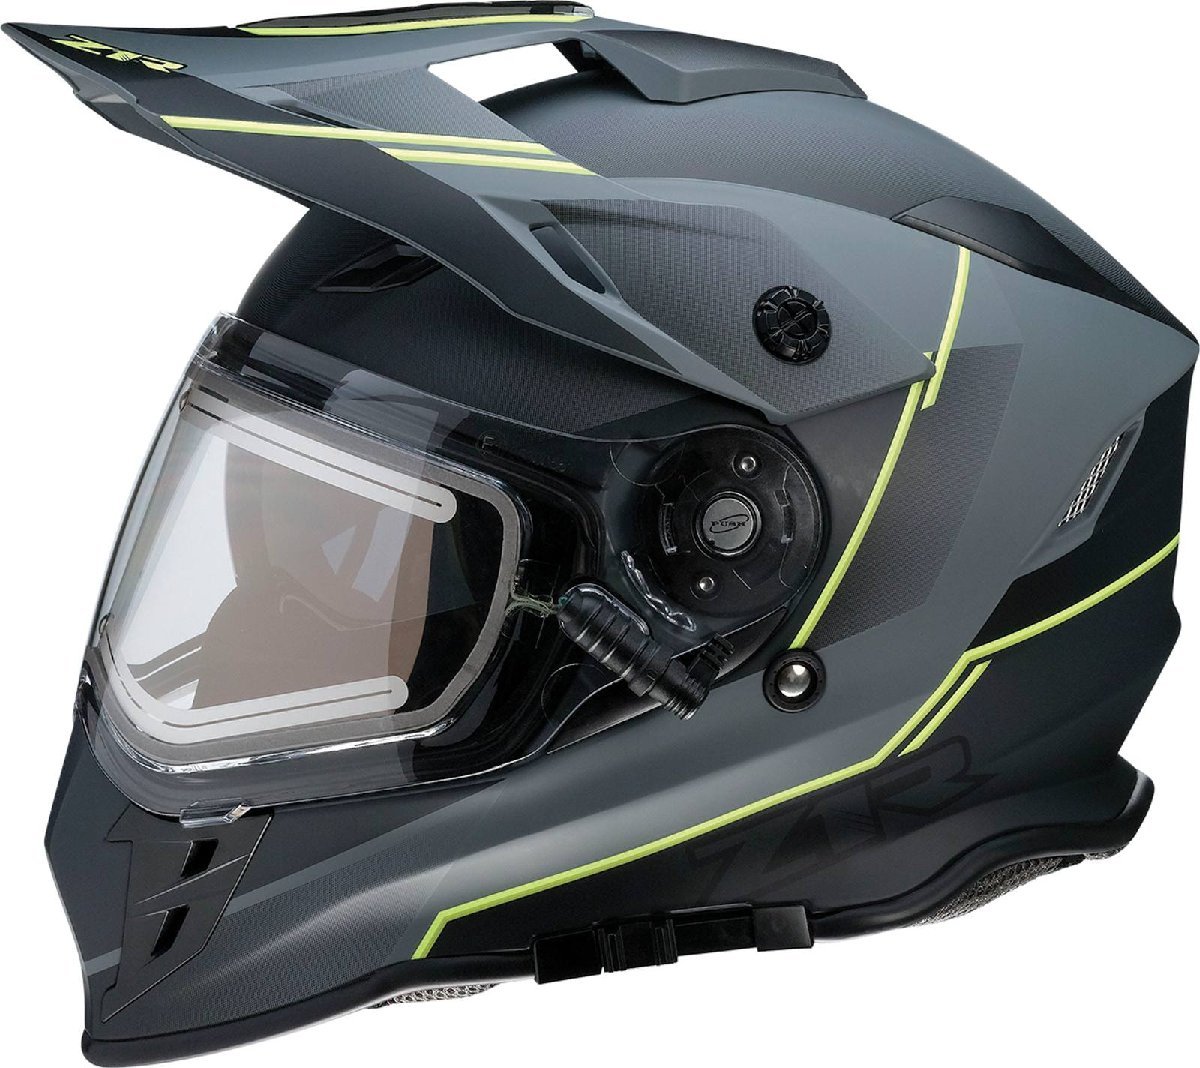 XSサイズ - グレー/ブラック/ハイビスイエロー - Z1R Range Bladestorm スノー エレクトリック/電熱シールド付き ヘルメット